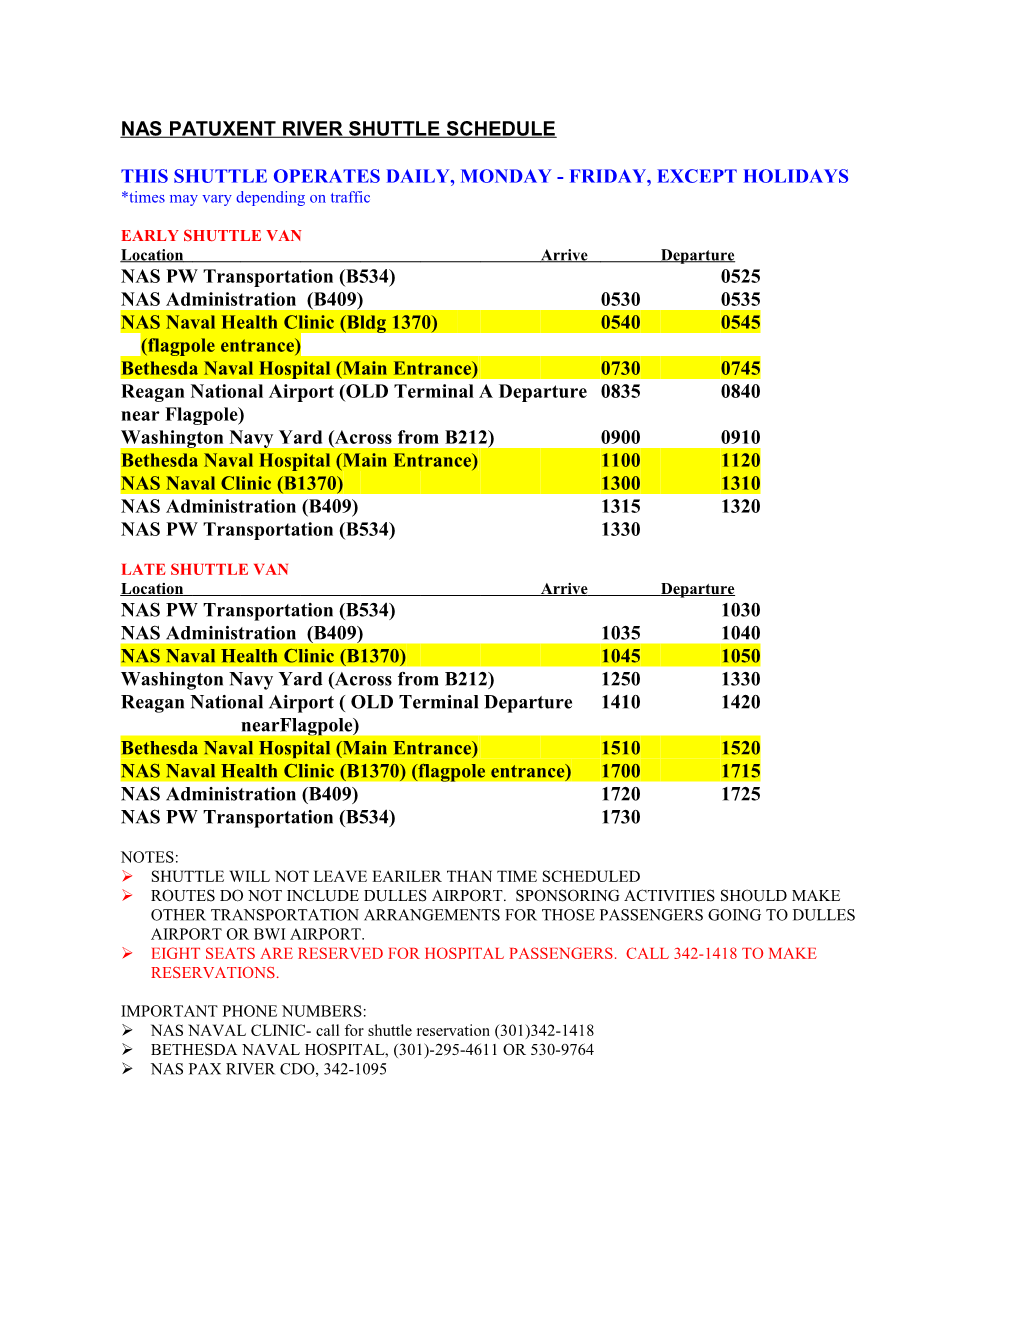 Patuxent River Public Works Shuttle Schedule